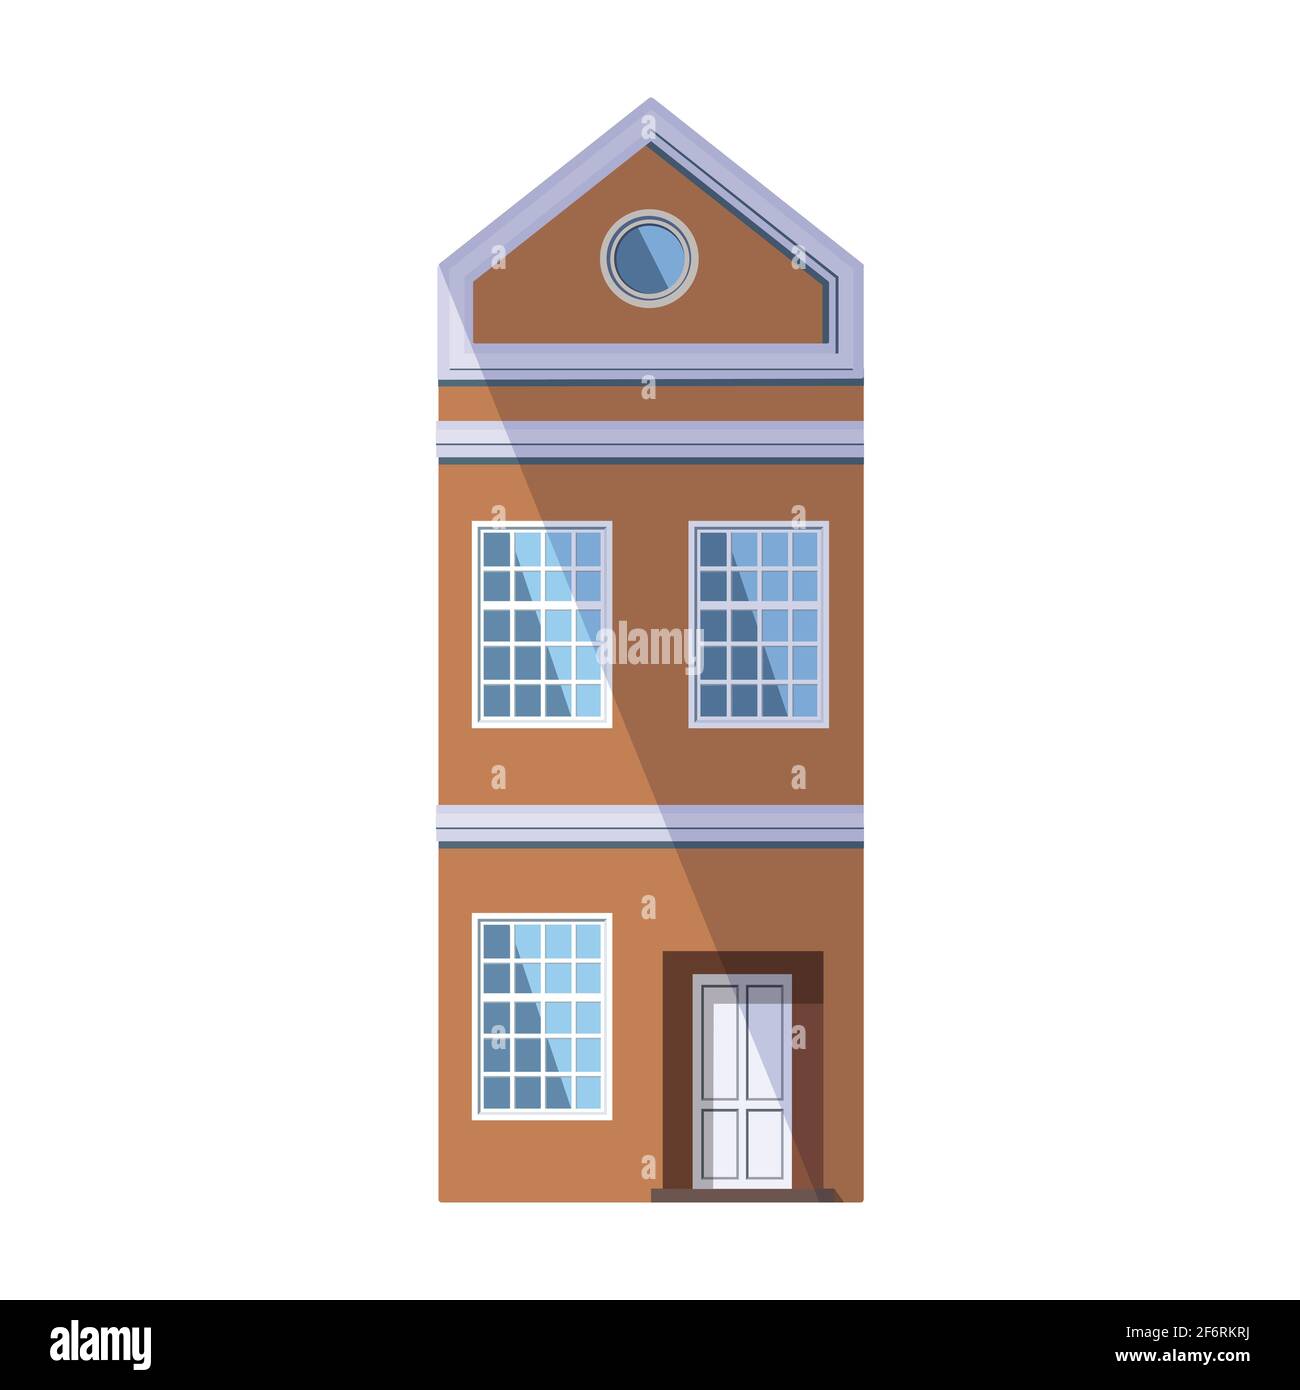 Ancienne maison orange européenne de style traditionnel hollandais avec toit en toit ouvrant, fenêtre ronde mansardée et grandes fenêtres de style loft. Illustration vectorielle Illustration de Vecteur